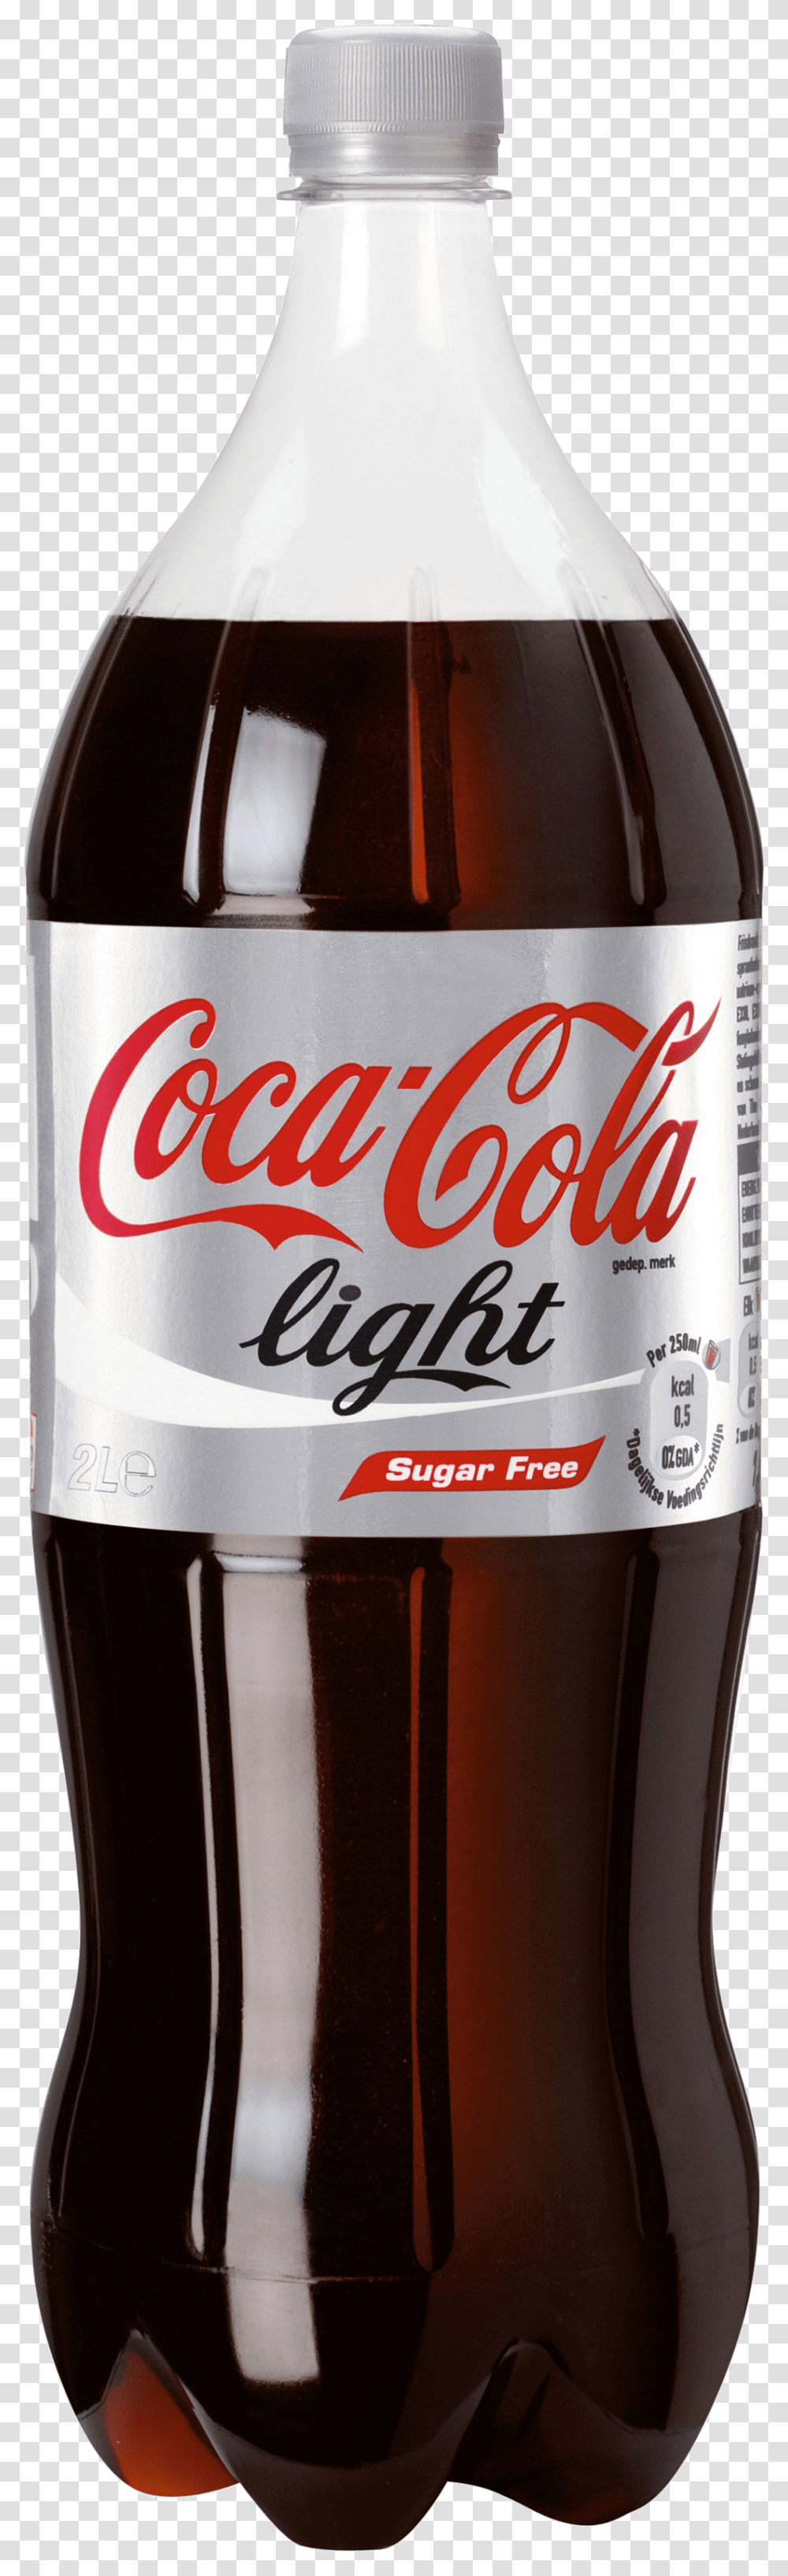 Cocacola, Drink, Beverage, Soda, Coke Transparent Png